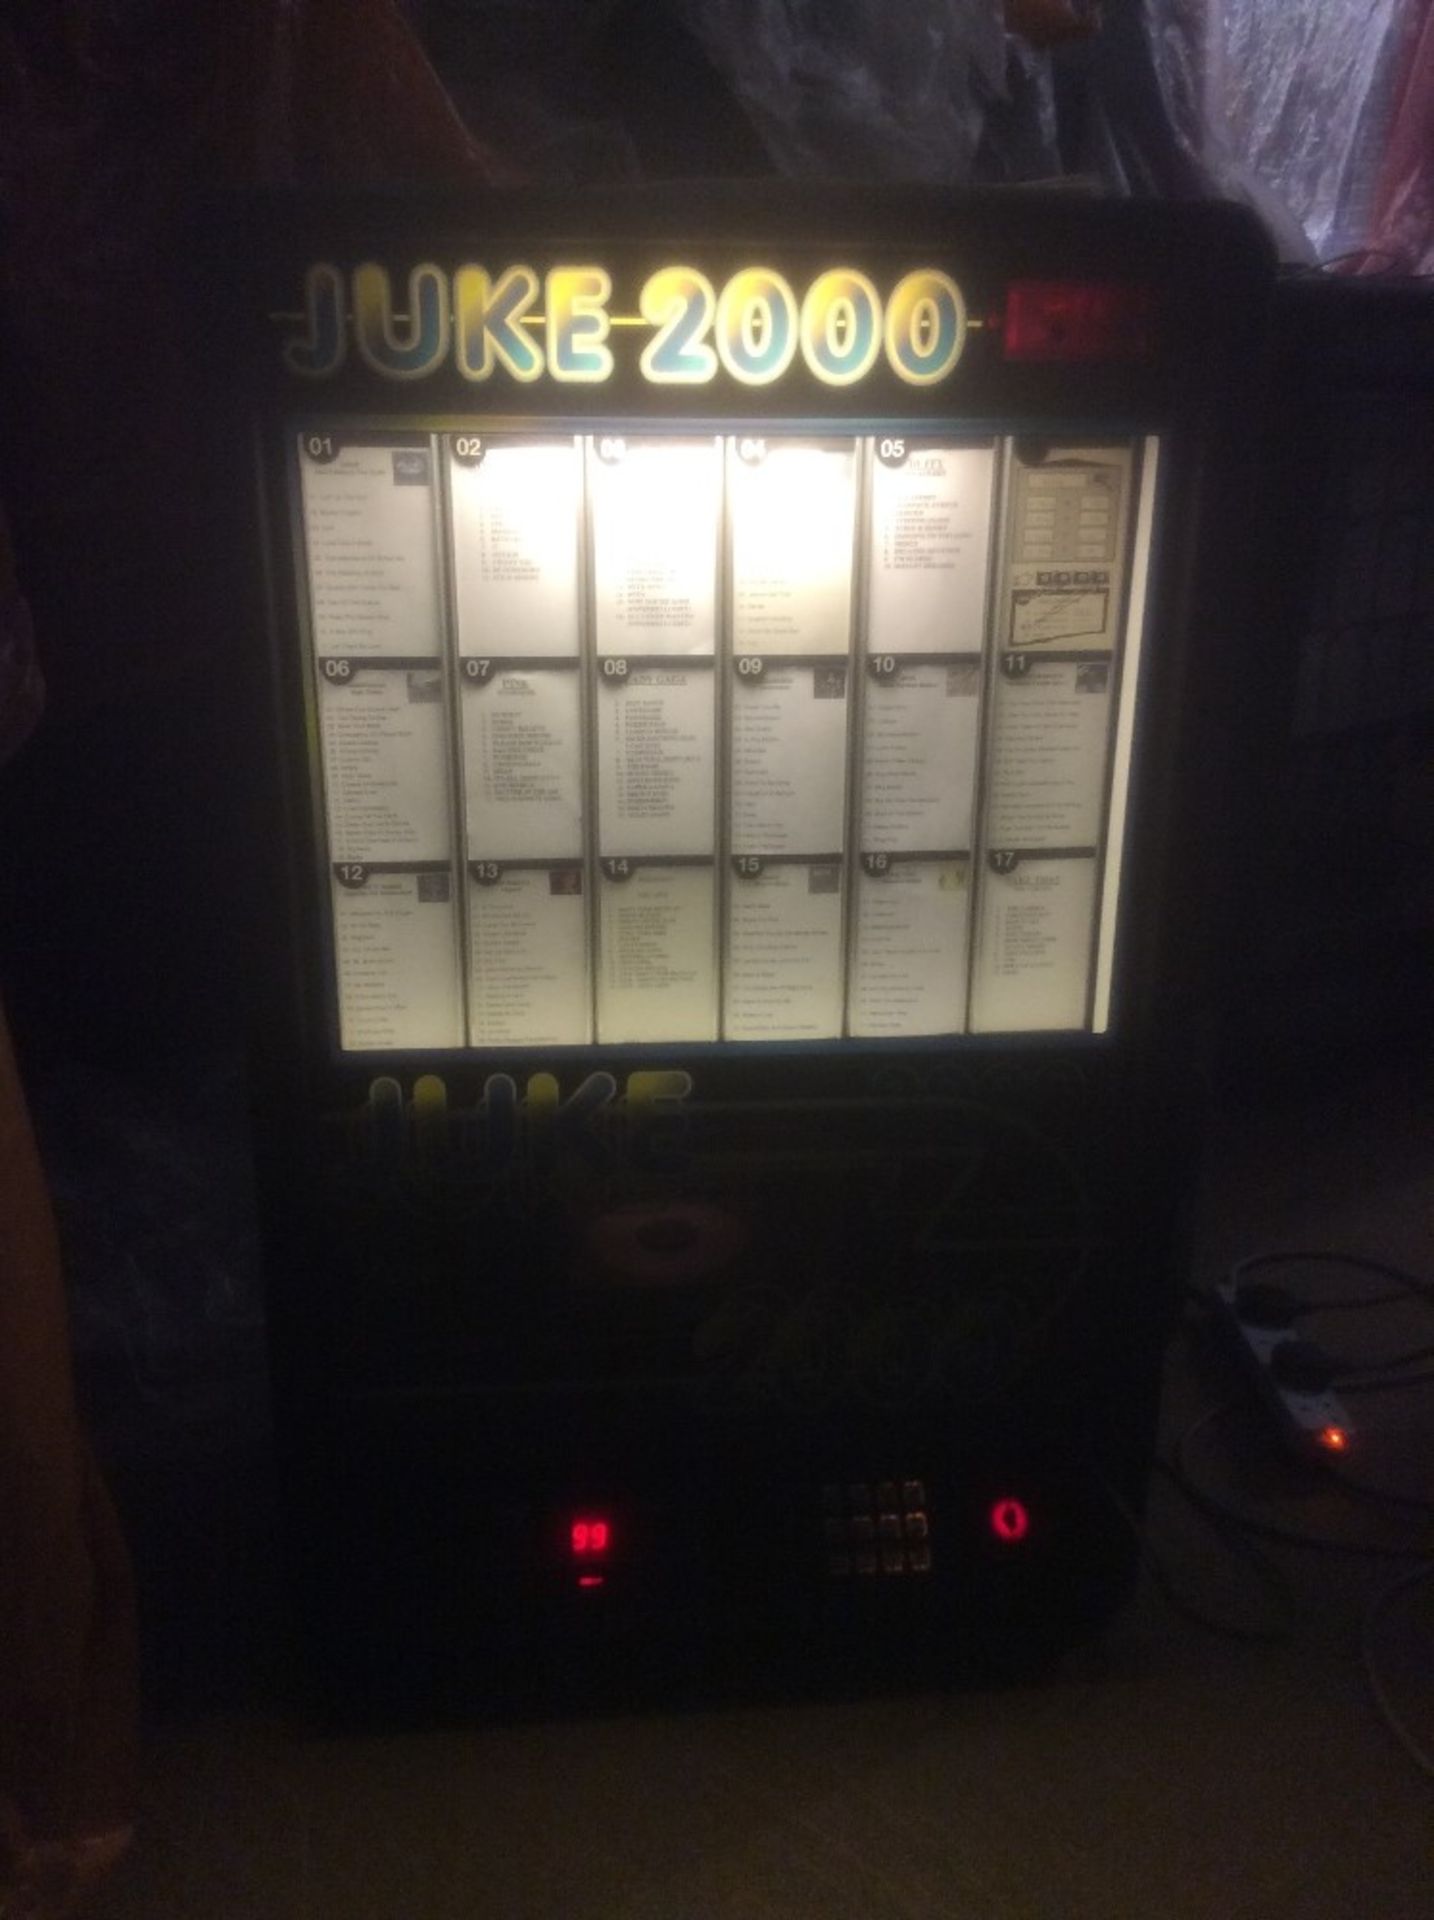 Juke Box – Wall Juke Box – Working – Takes New £1